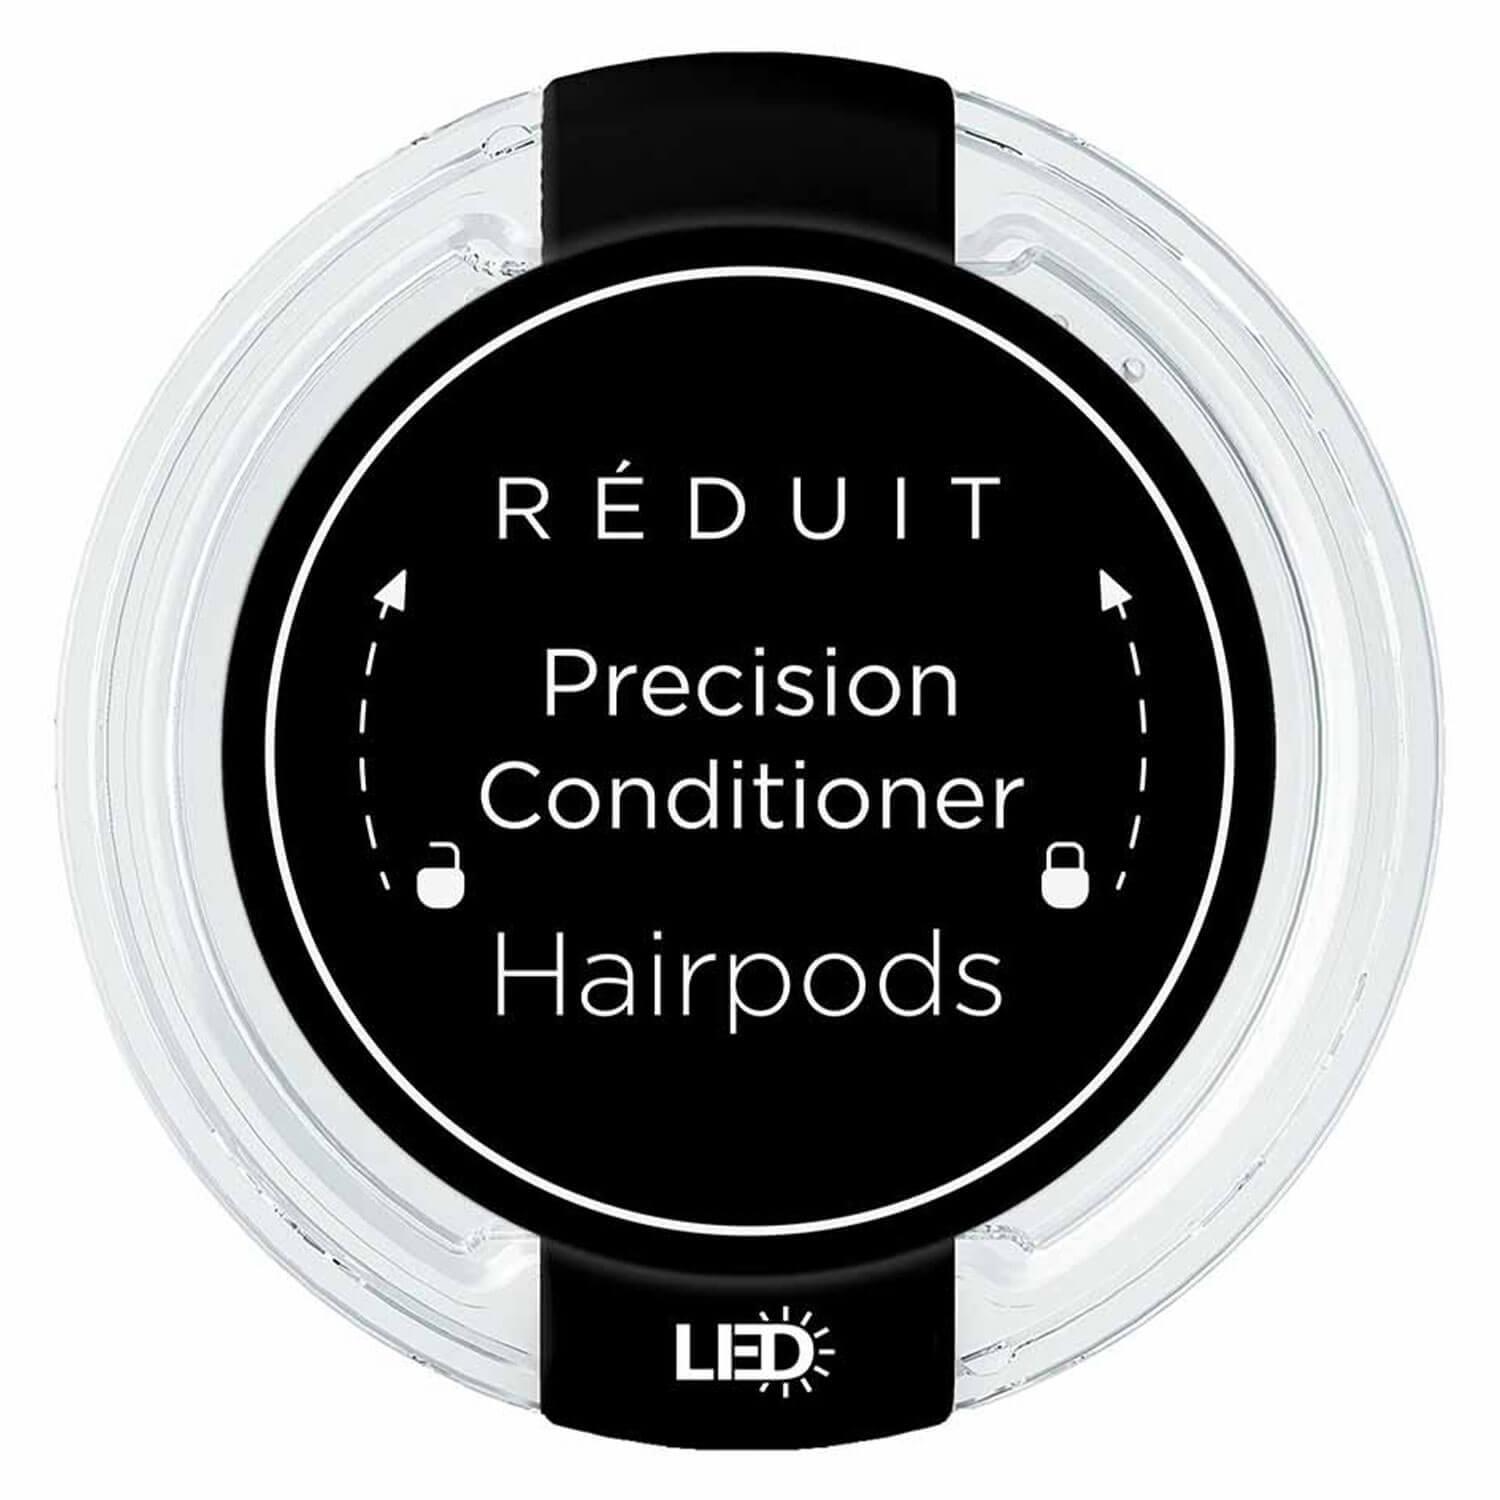 RÉDUIT - Precision Conditioner Hairpods LED